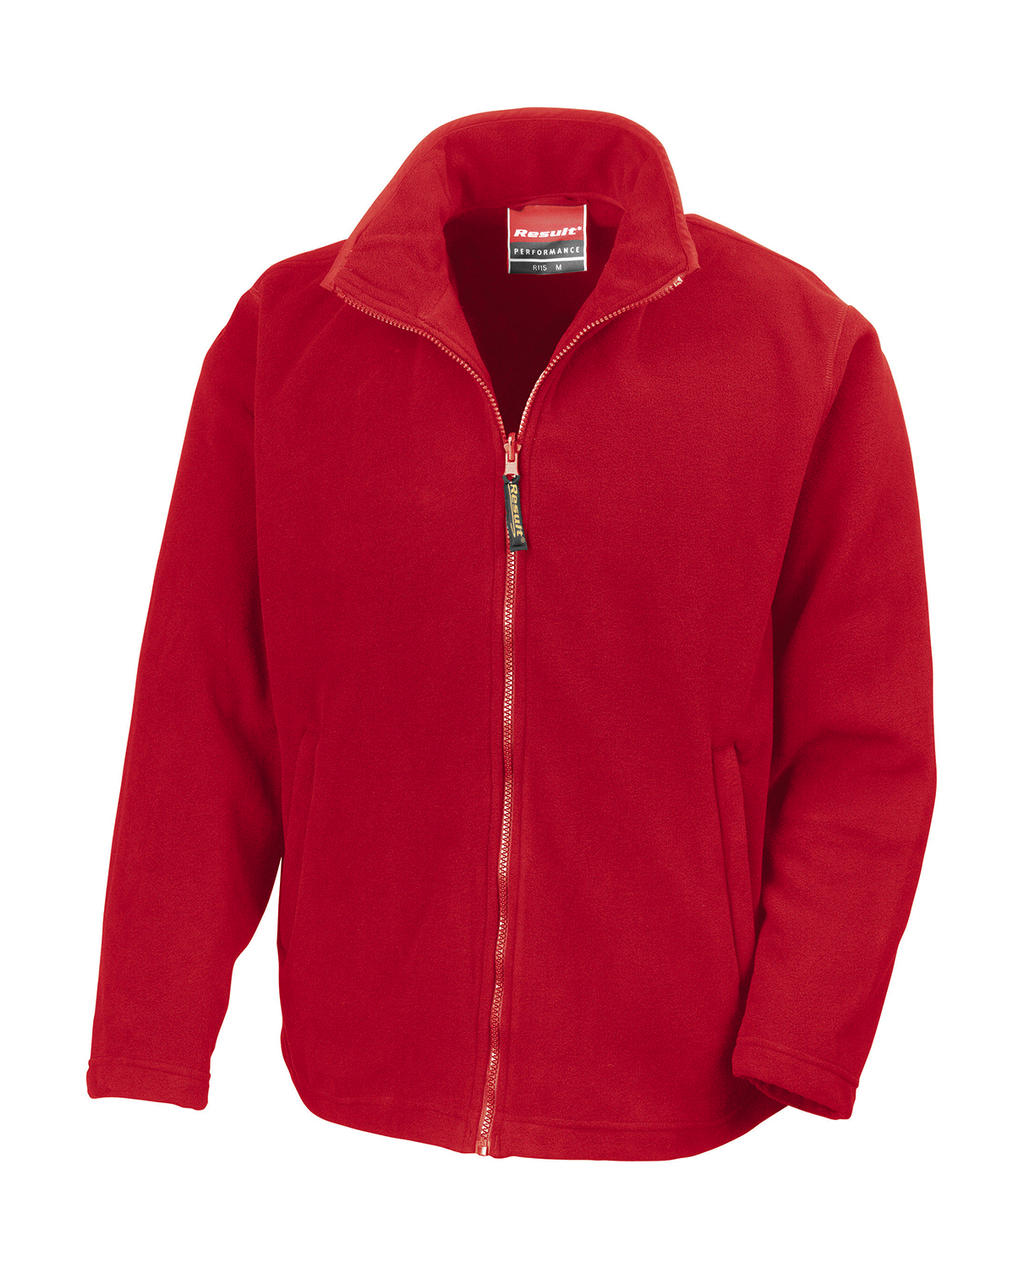  Horizon High Grade Microfleece Jacket in Farbe Cardinal Red